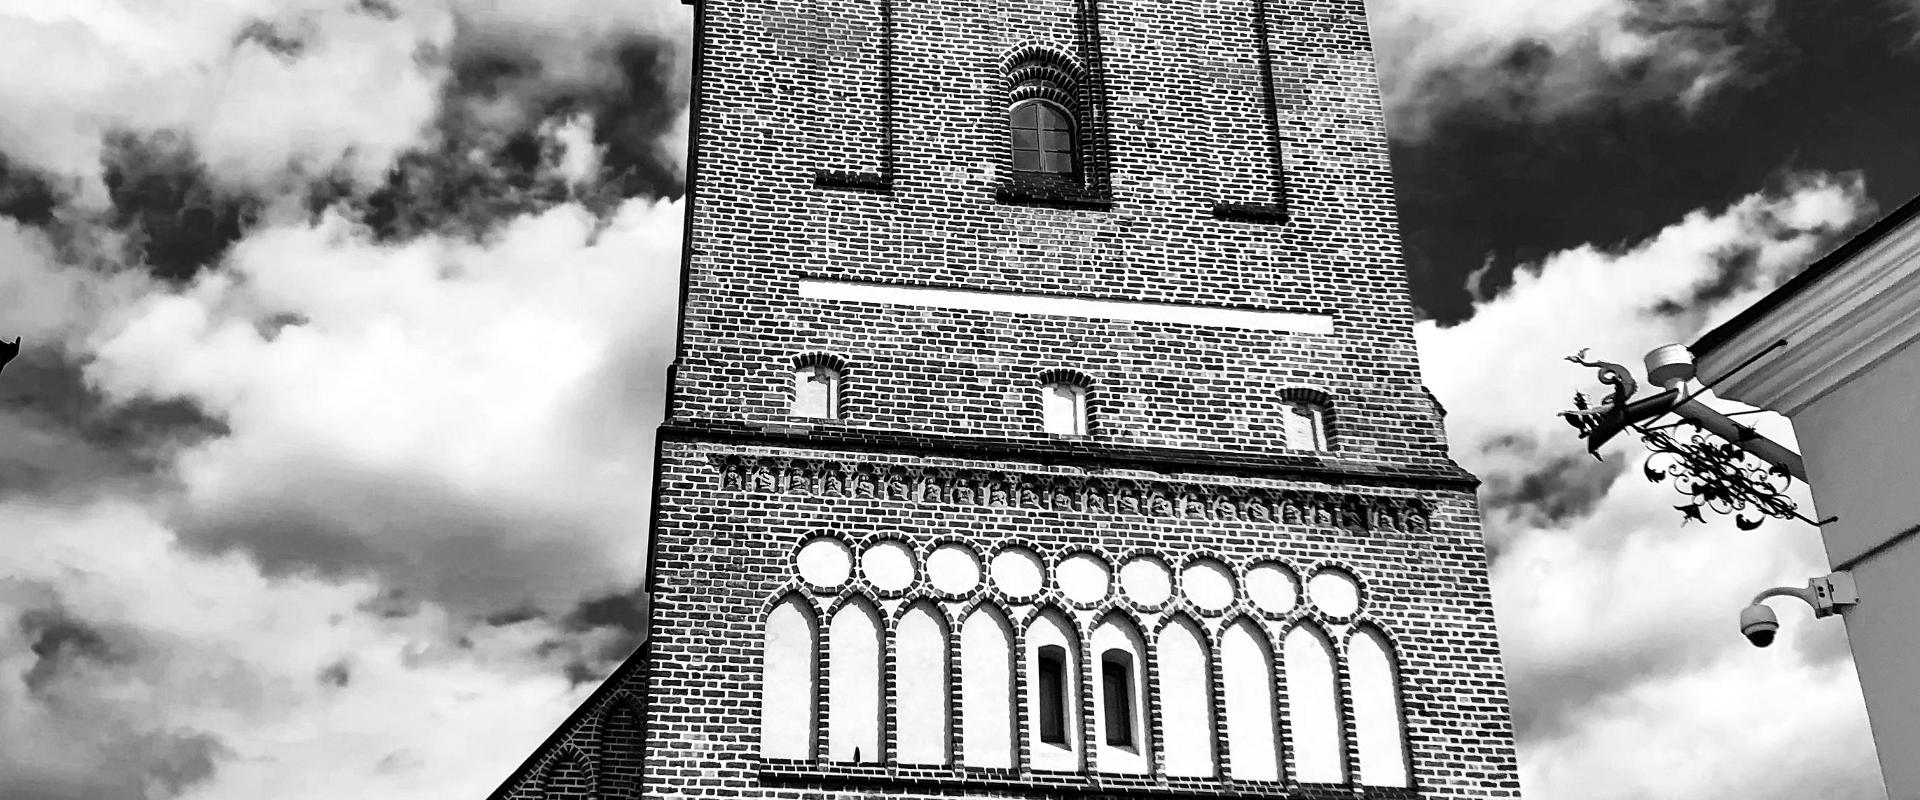 Kirchturm der Johanniskirche zu Tartu